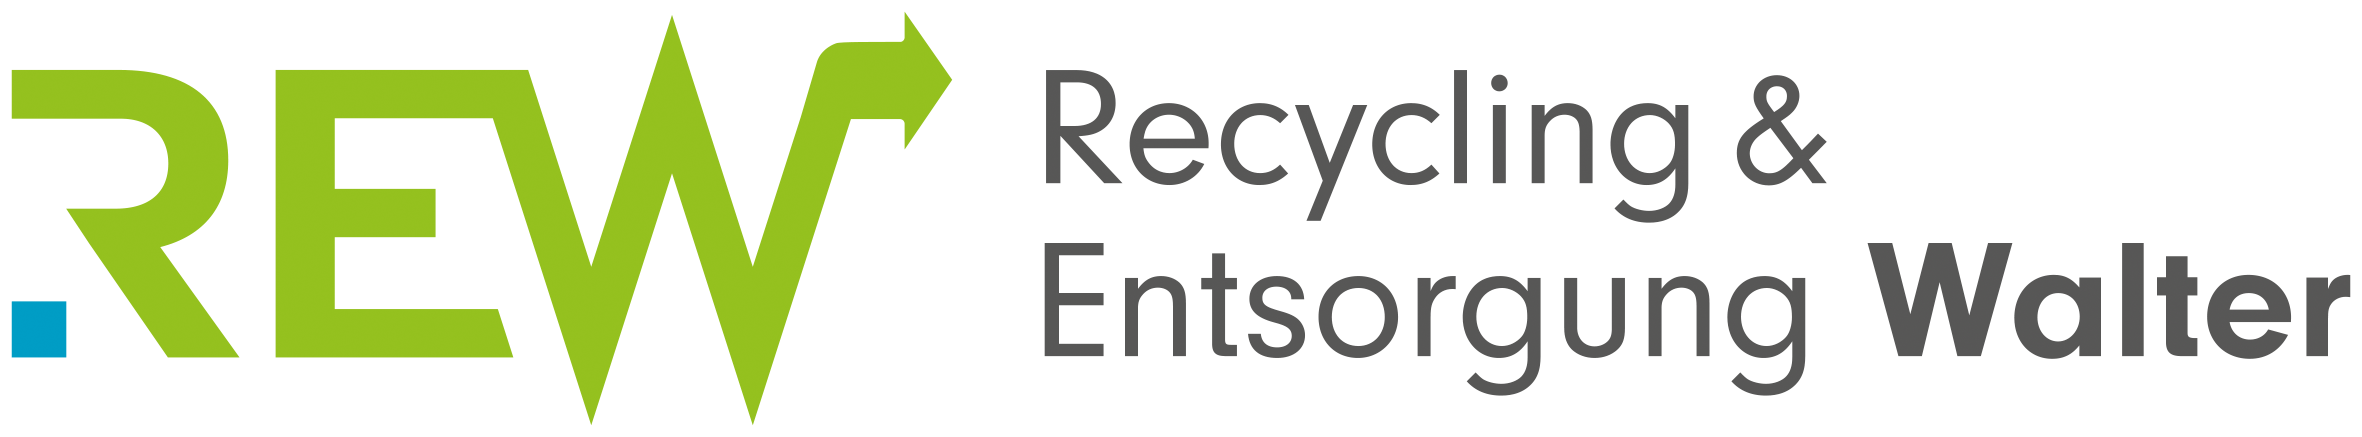 REW Recycling & Entsorgung Walter